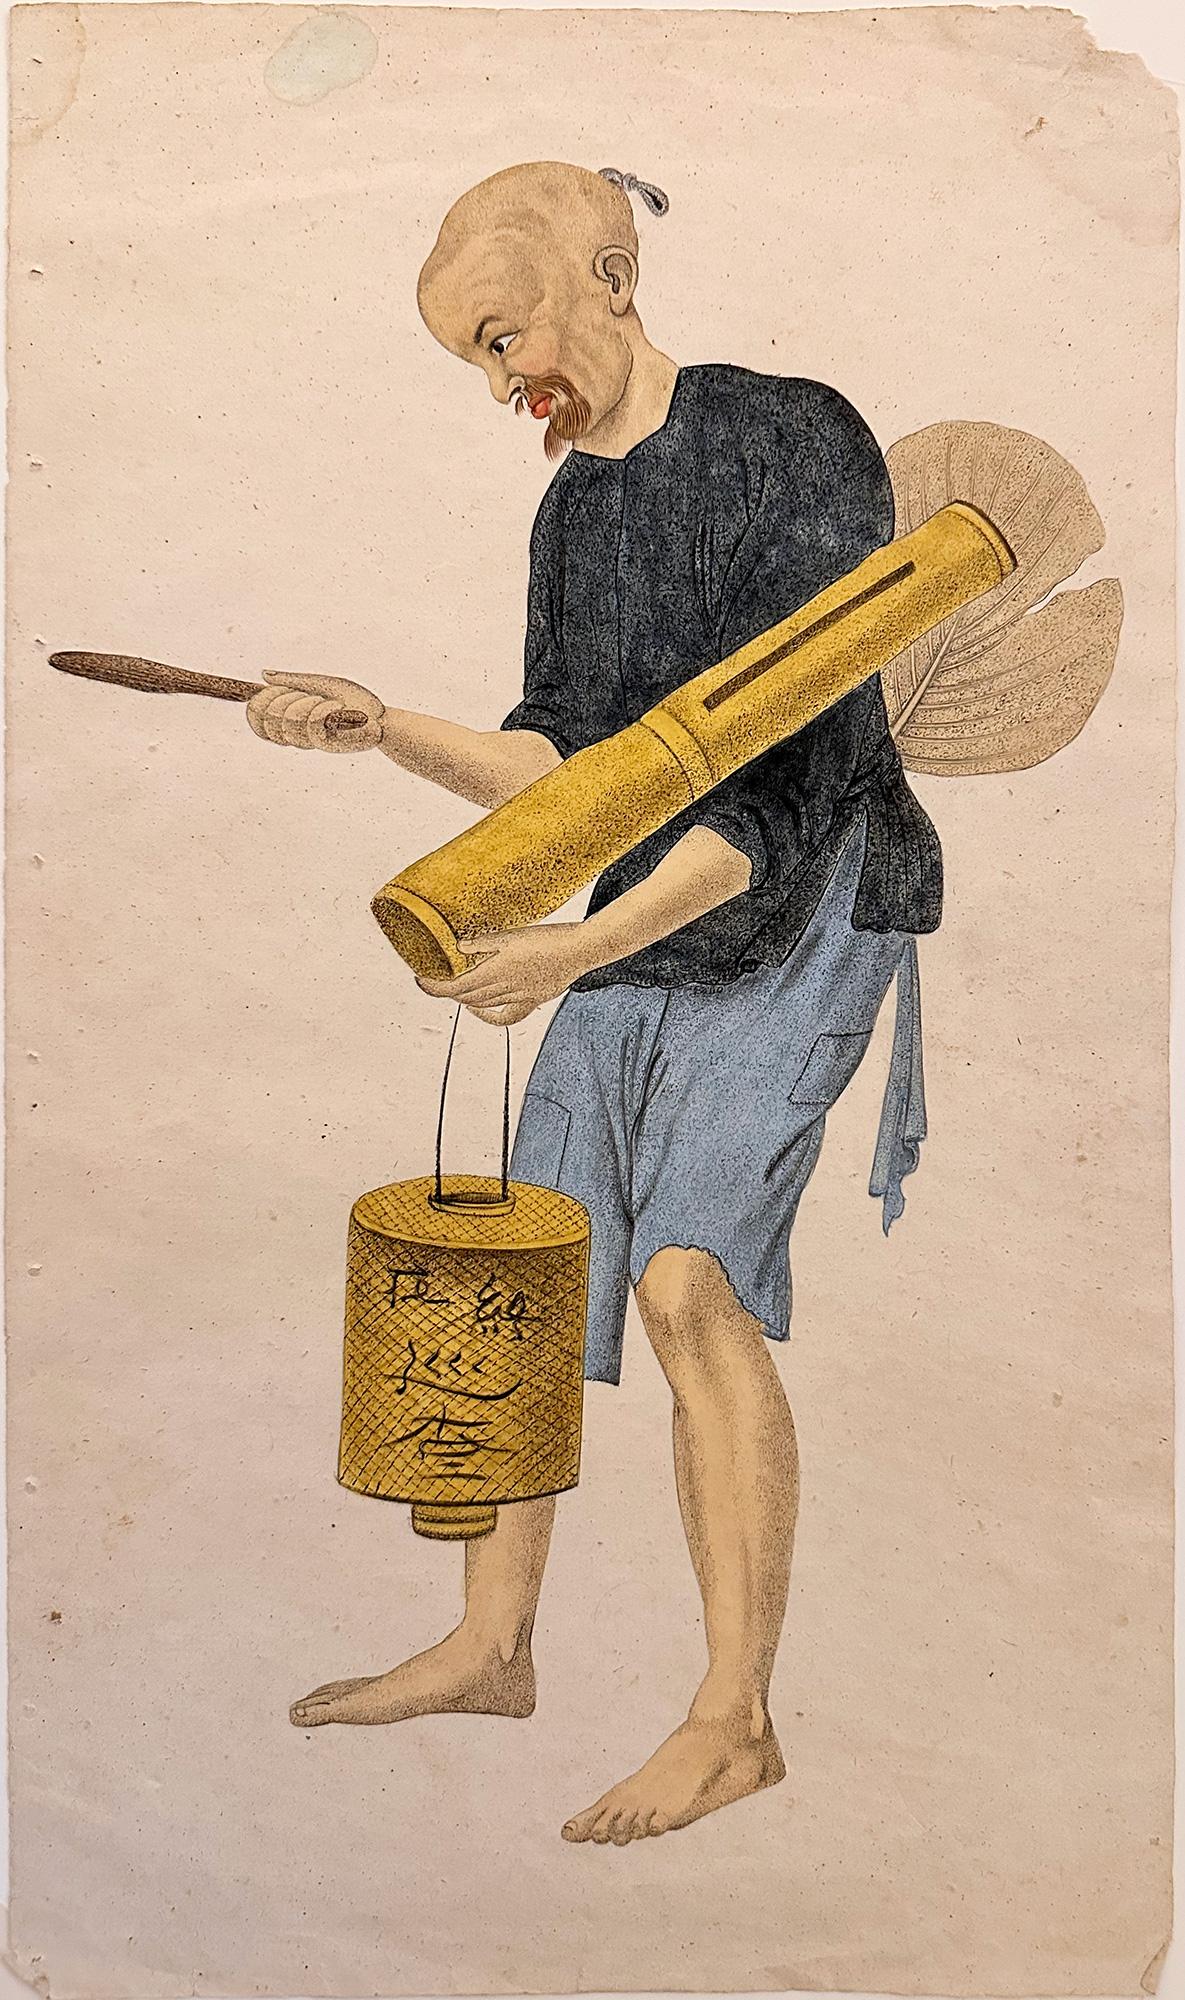 Pu Qùa Figurative Print – Ein chinesischer Uhrmacher, aus dem Kostüm Chinas, von G.H. Mason, Engr. John Dadley